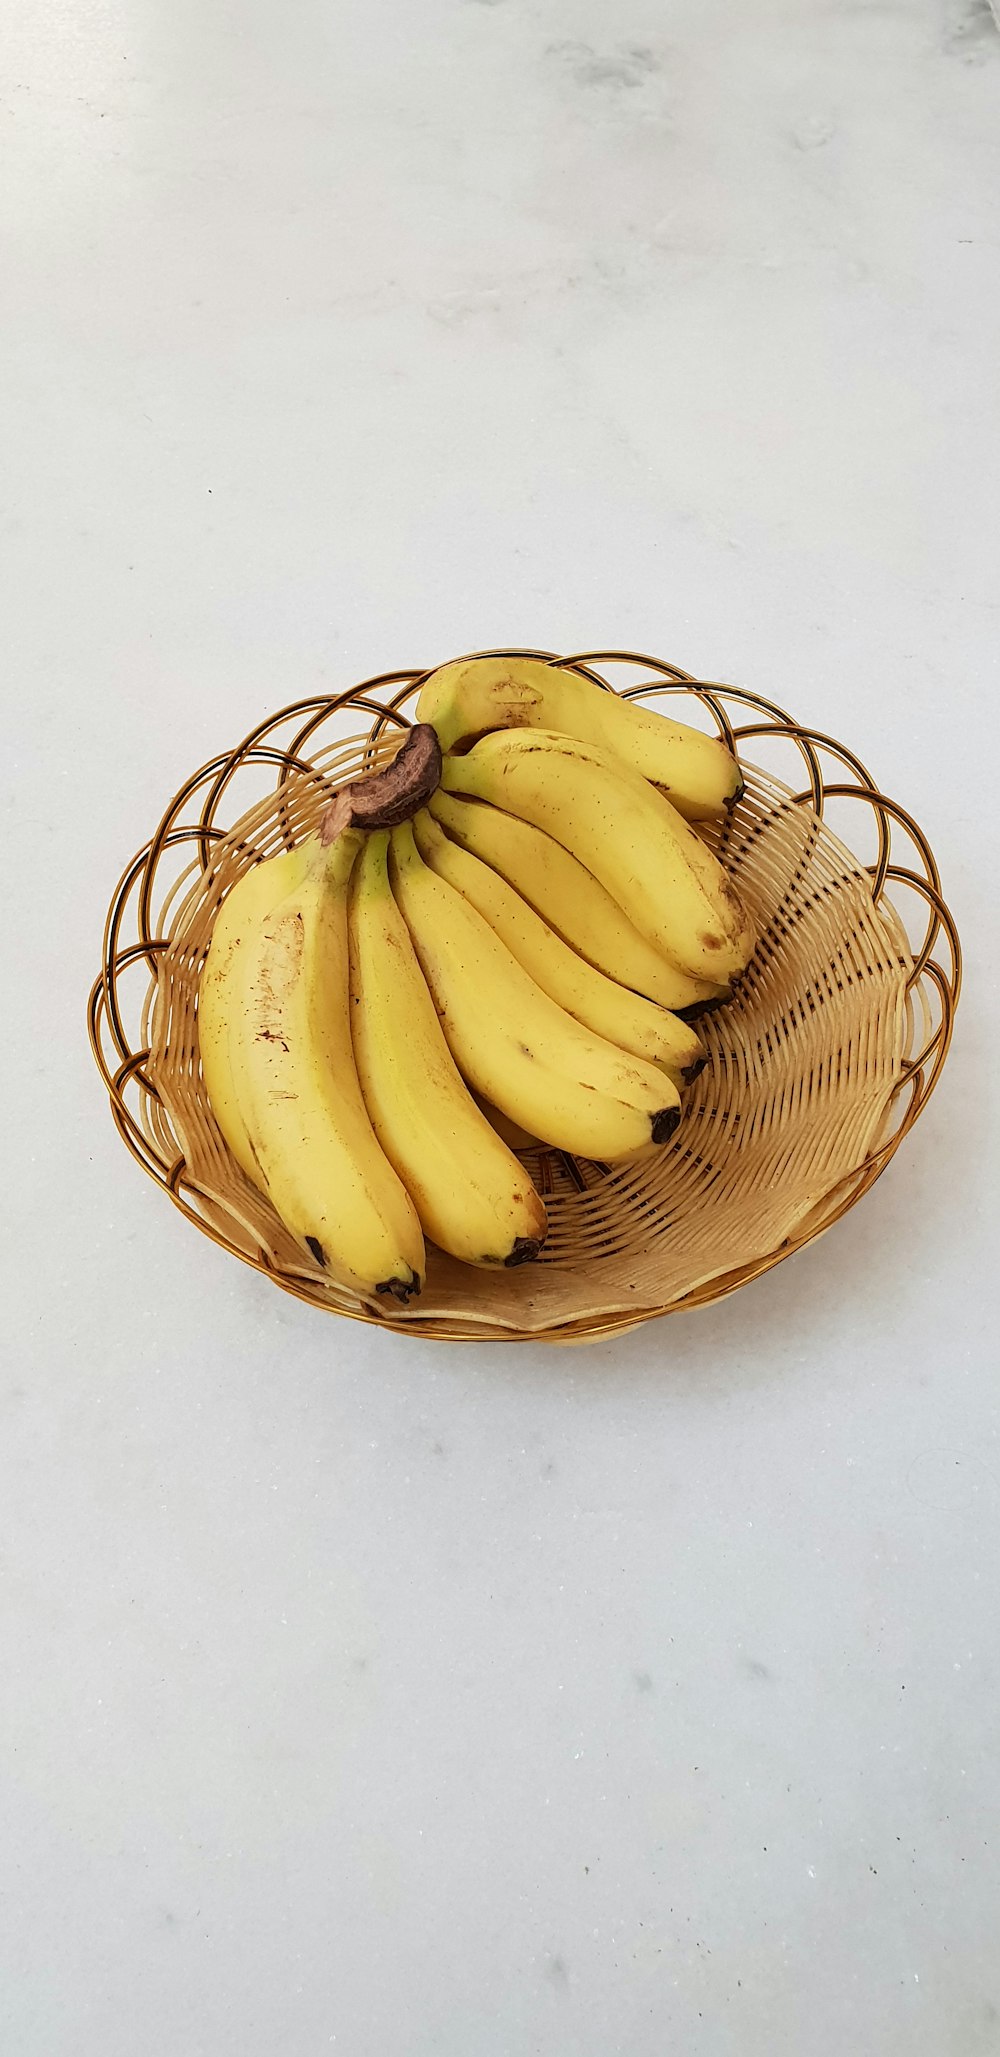 Bund gelbe Bananen in einer braunen Weidenschale